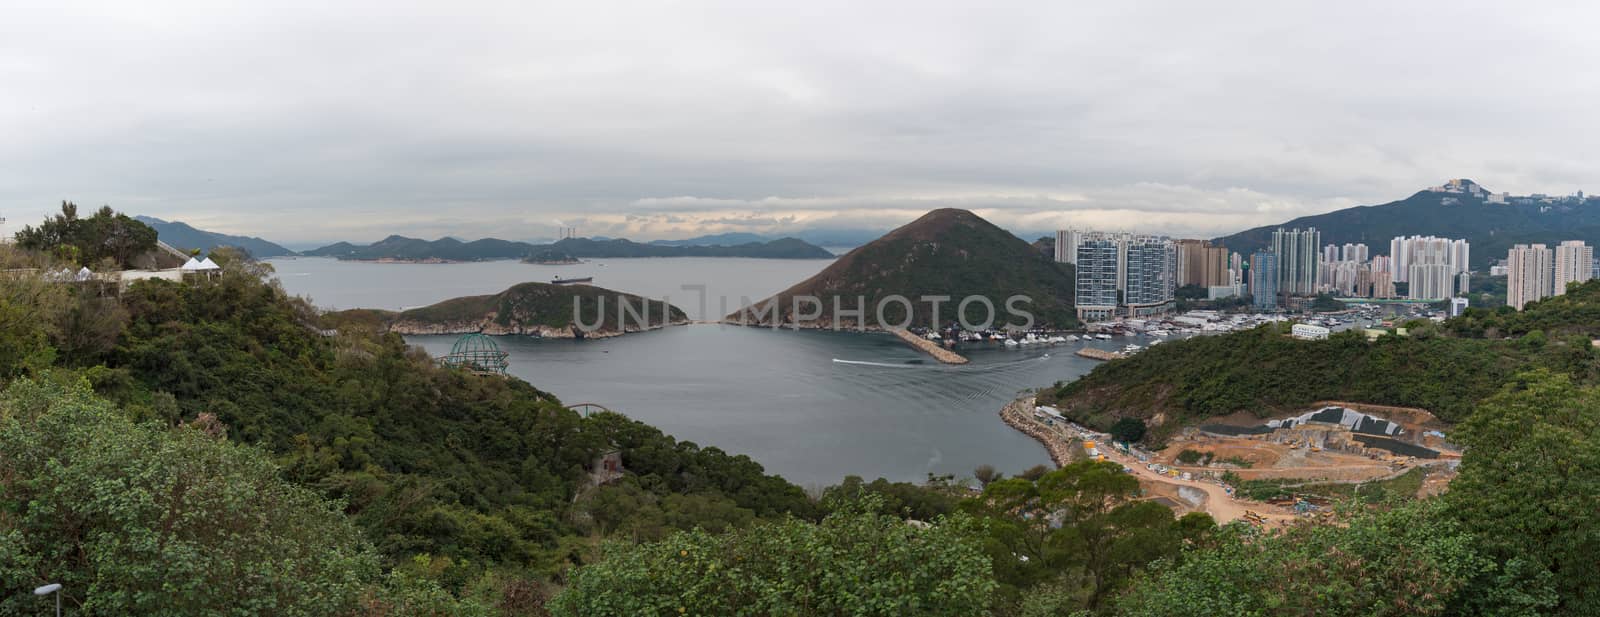 View from Hong Kong Ocean Park